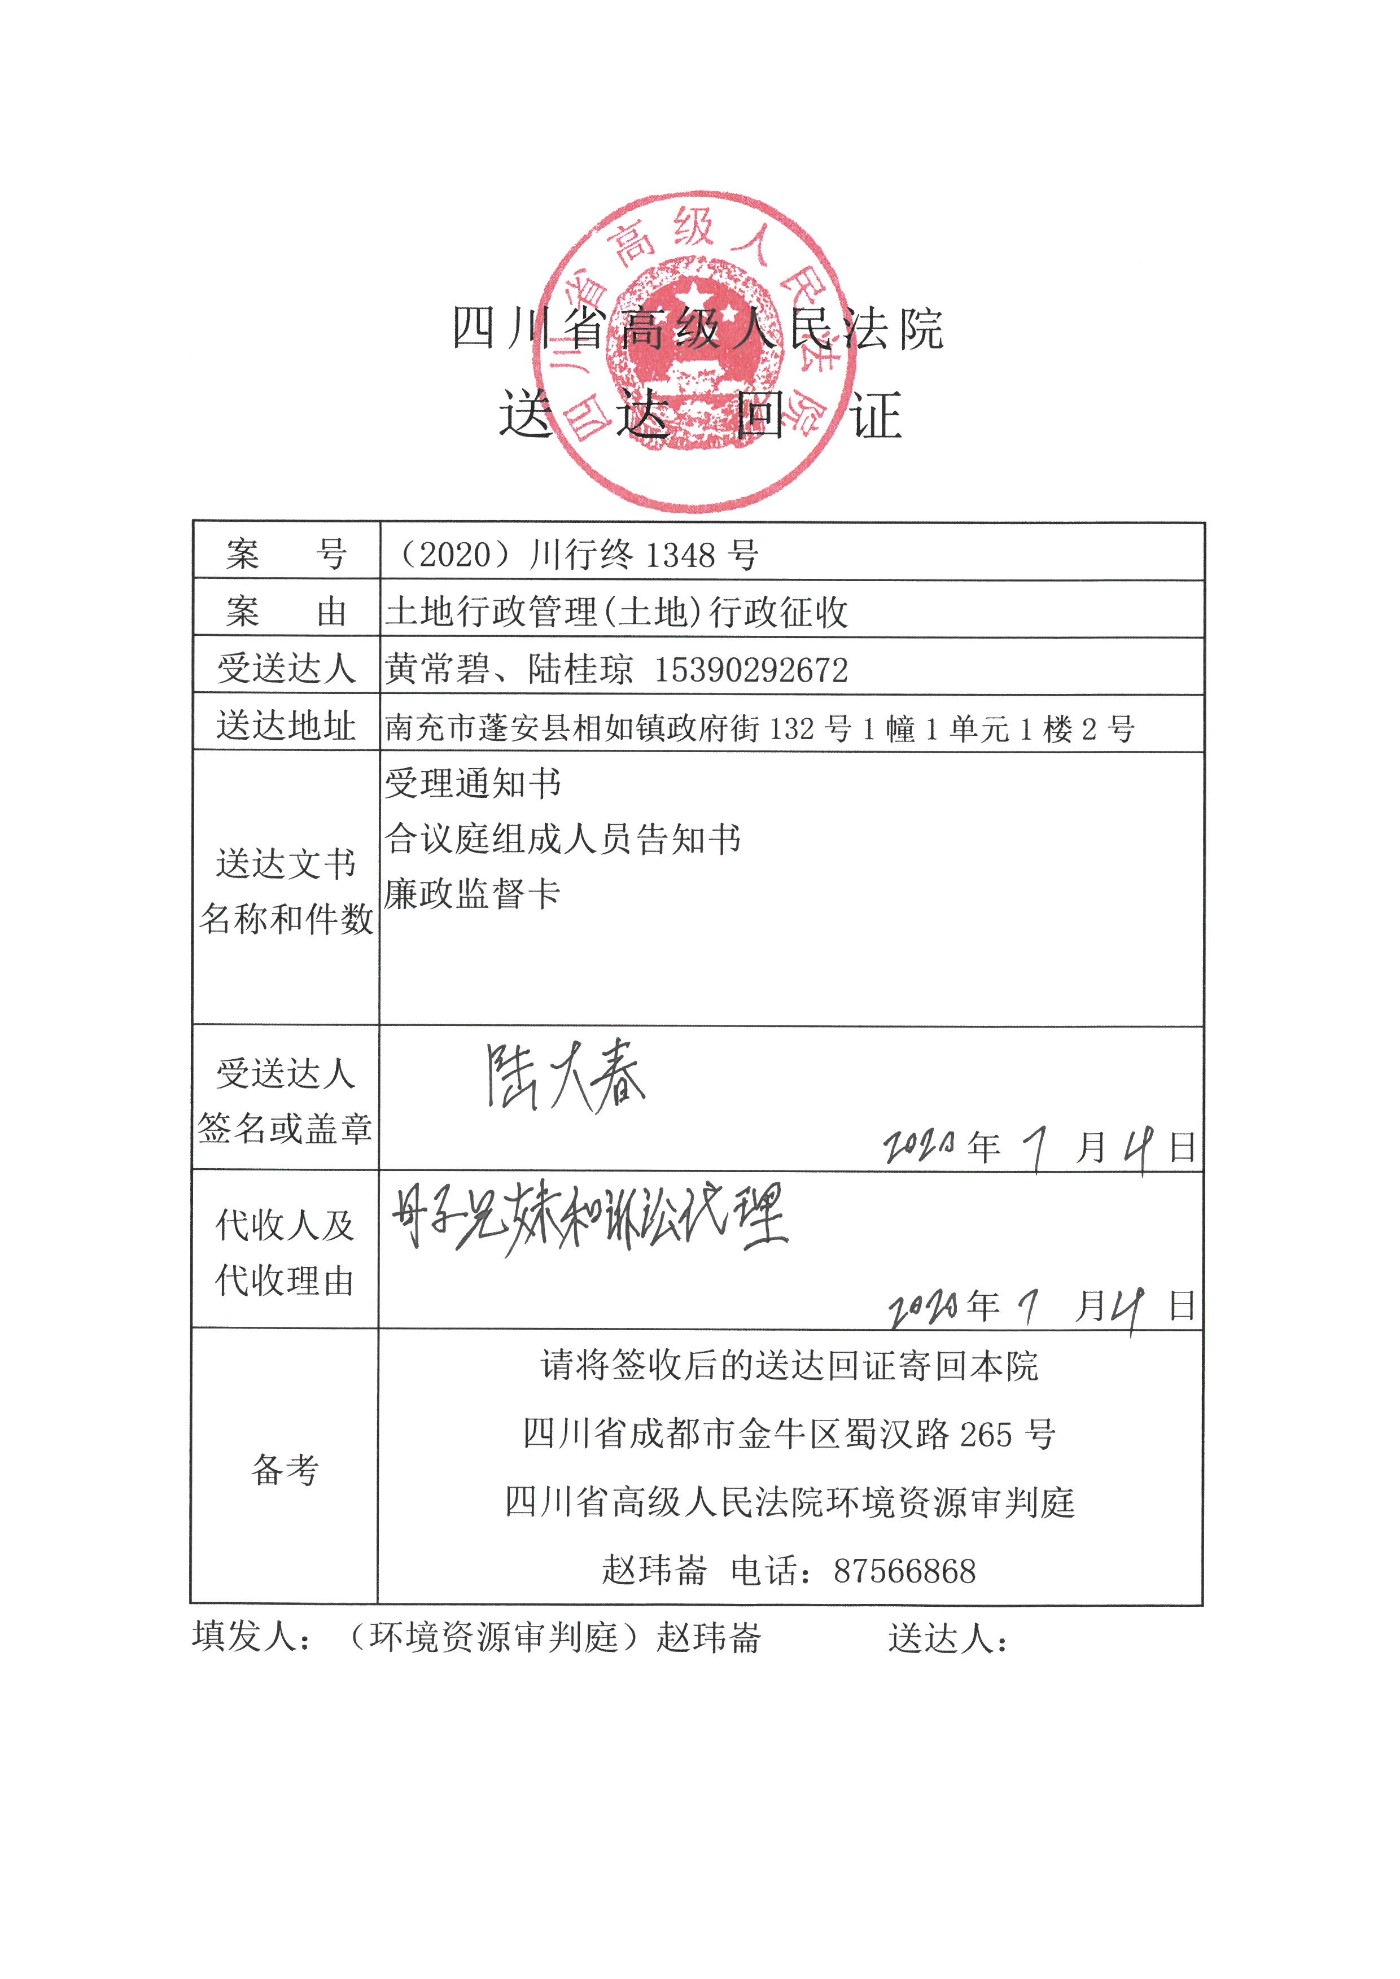 黃常碧陆桂琼签收四川省高级人民法院的送达回执.jpg